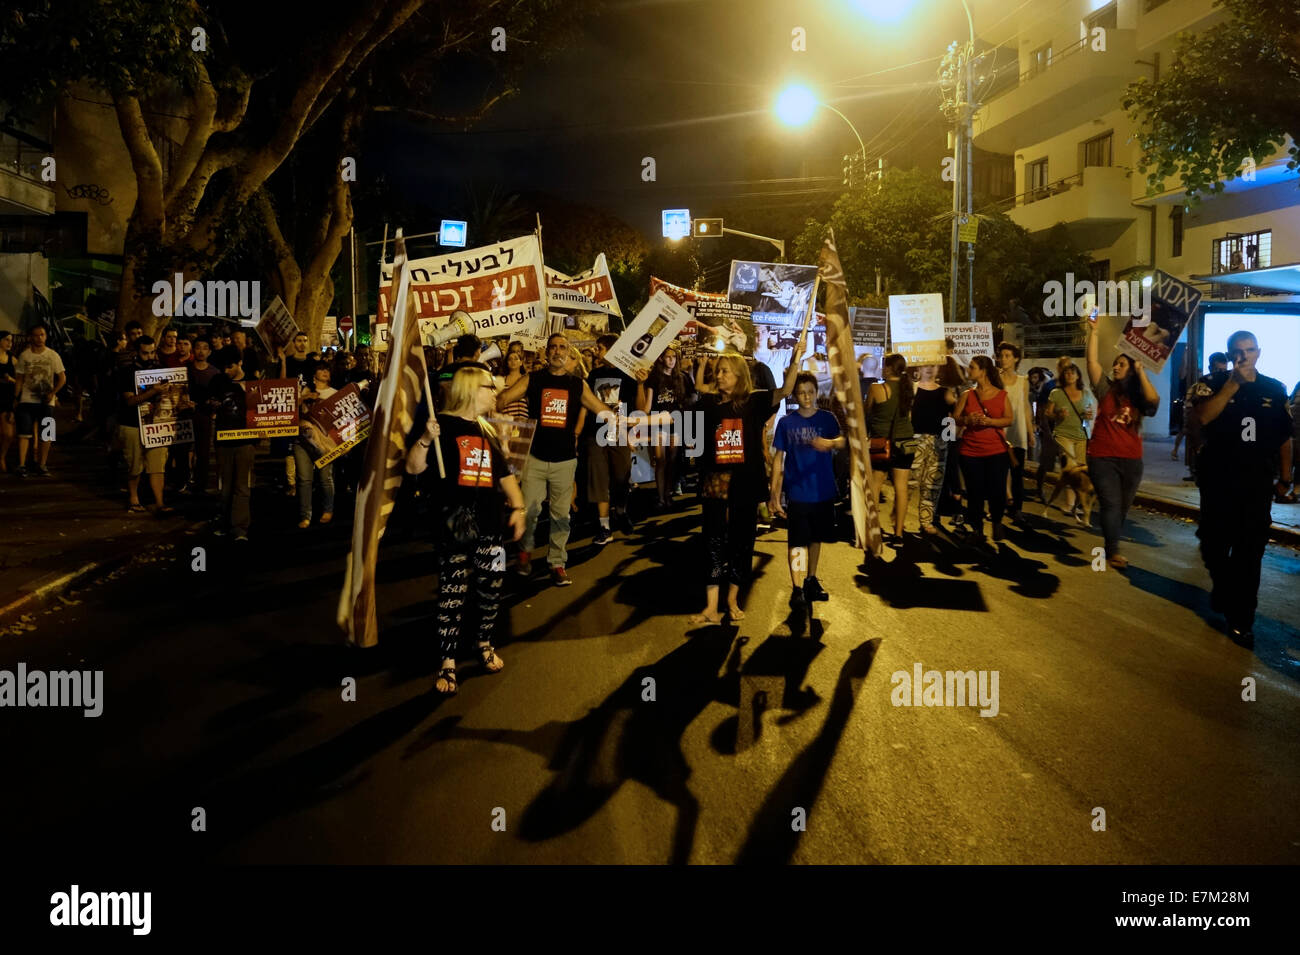 Menschen, die Plakate halten, die gegen die erlaubte Einschließung von Tieren protestieren Wird in Forschungslabors und in der Fabriklandwirtschaft verwendet, während sie während des marsches Eine Kundgebung für Tierrechte in Tel Aviv, Israel Stockfoto